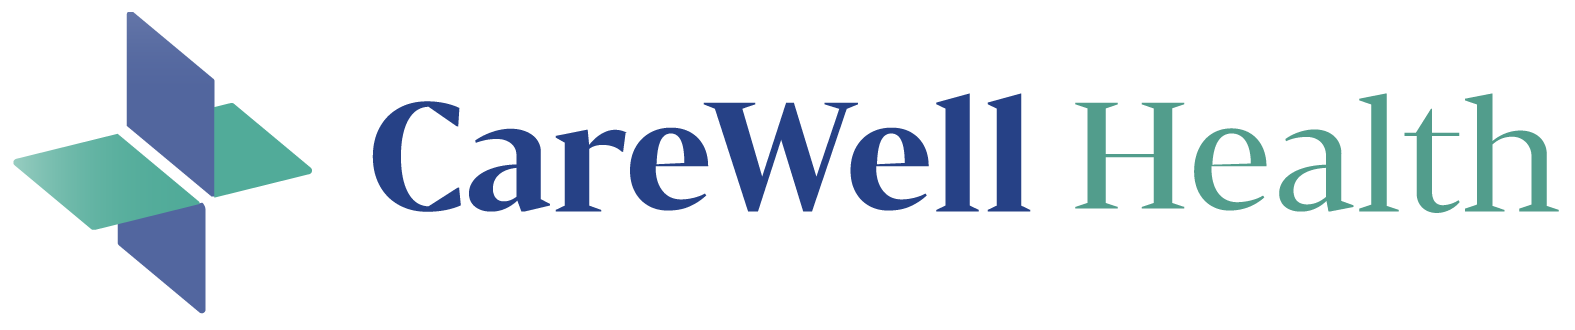 CareWell Health logo